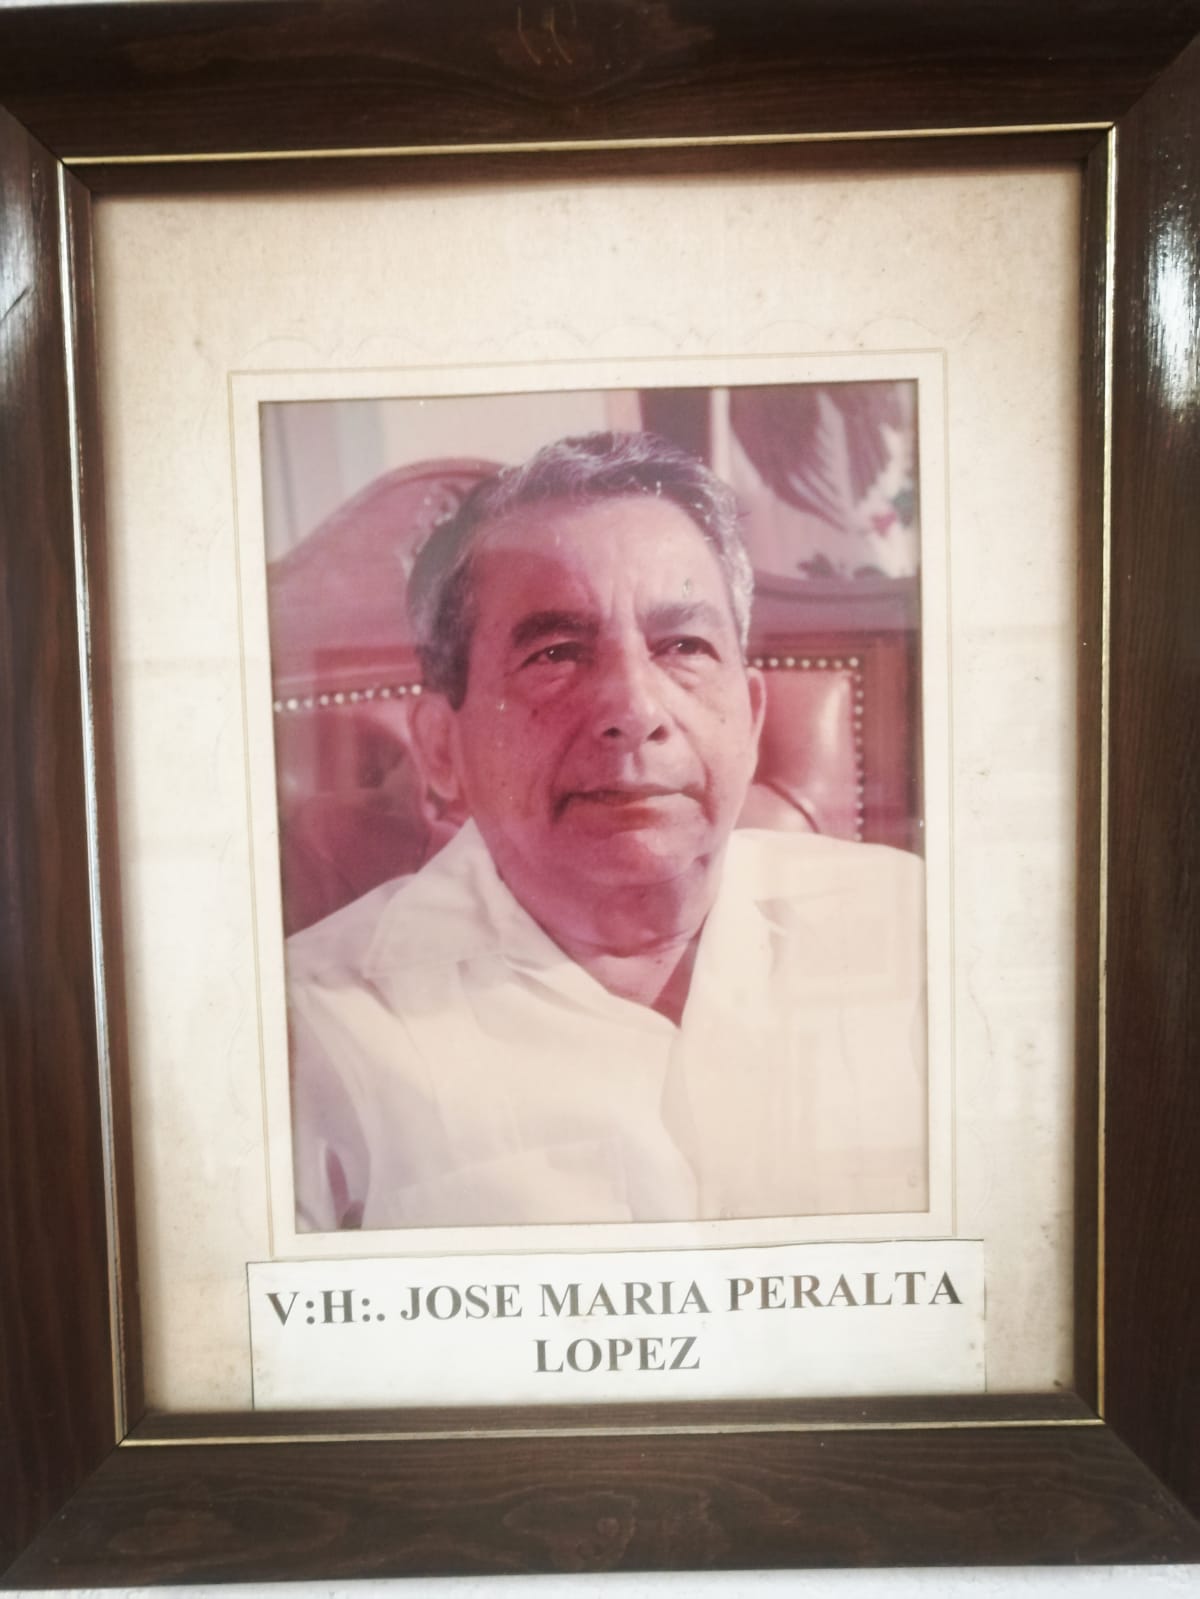 V:.H:.José María Peralta López - Gobernador Sustituto (14 de diciembre de 1987 - 31 de diciembre de 1988)